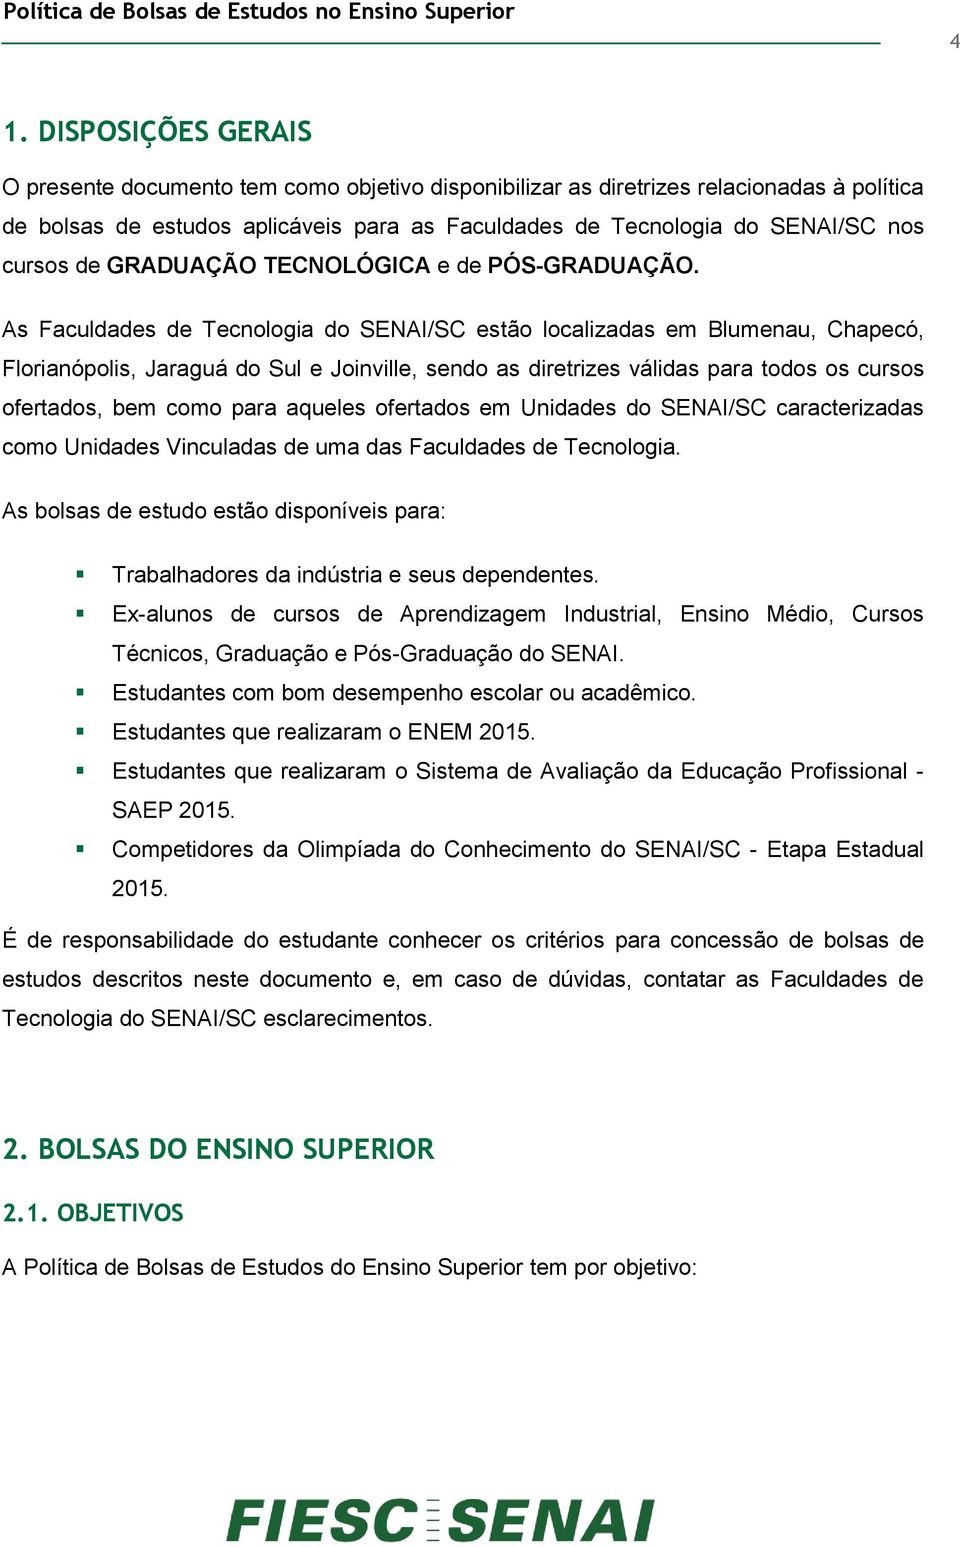 As Faculdades de Tecnologia do SENAI/SC estão localizadas em Blumenau, Chapecó, Florianópolis, Jaraguá do Sul e Joinville, sendo as diretrizes válidas para todos os cursos ofertados, bem como para